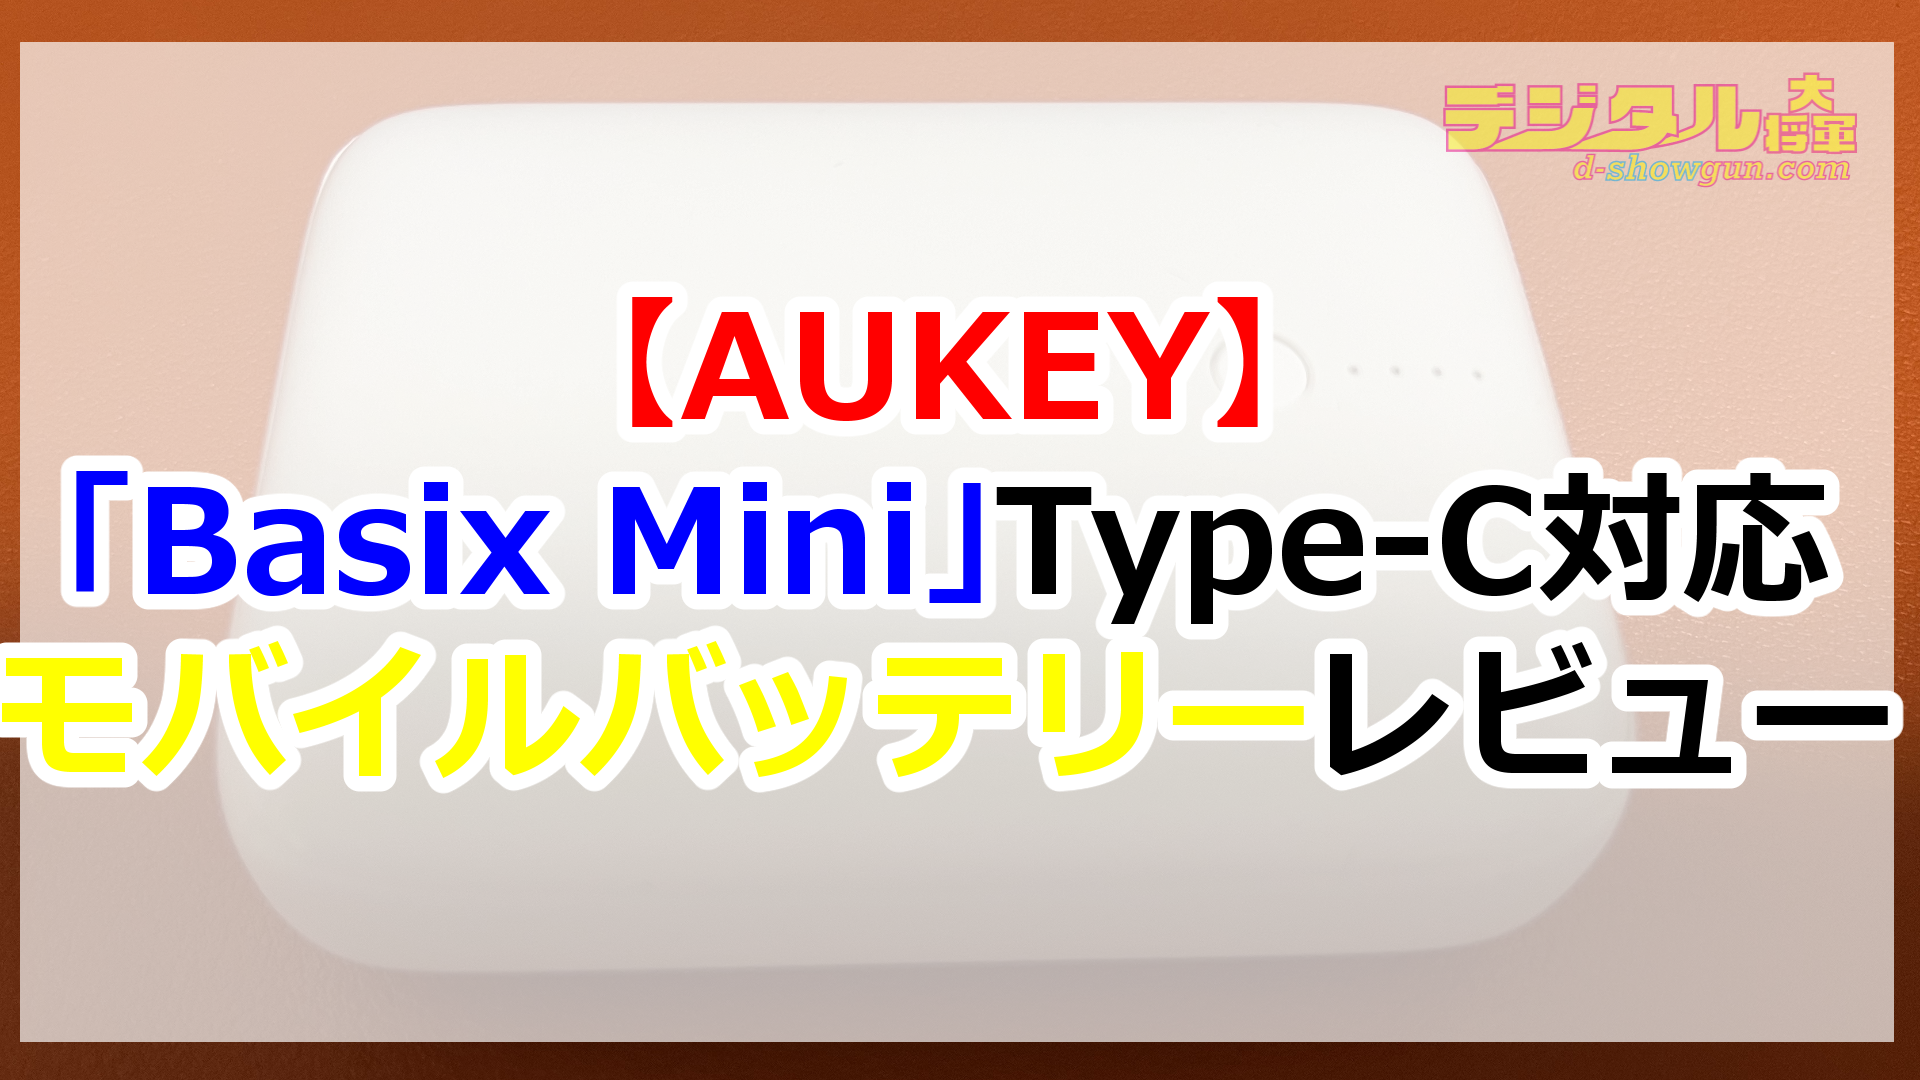 【AUKEY】「Basix Mini」Type-C対応モバイルバッテリーレビュー